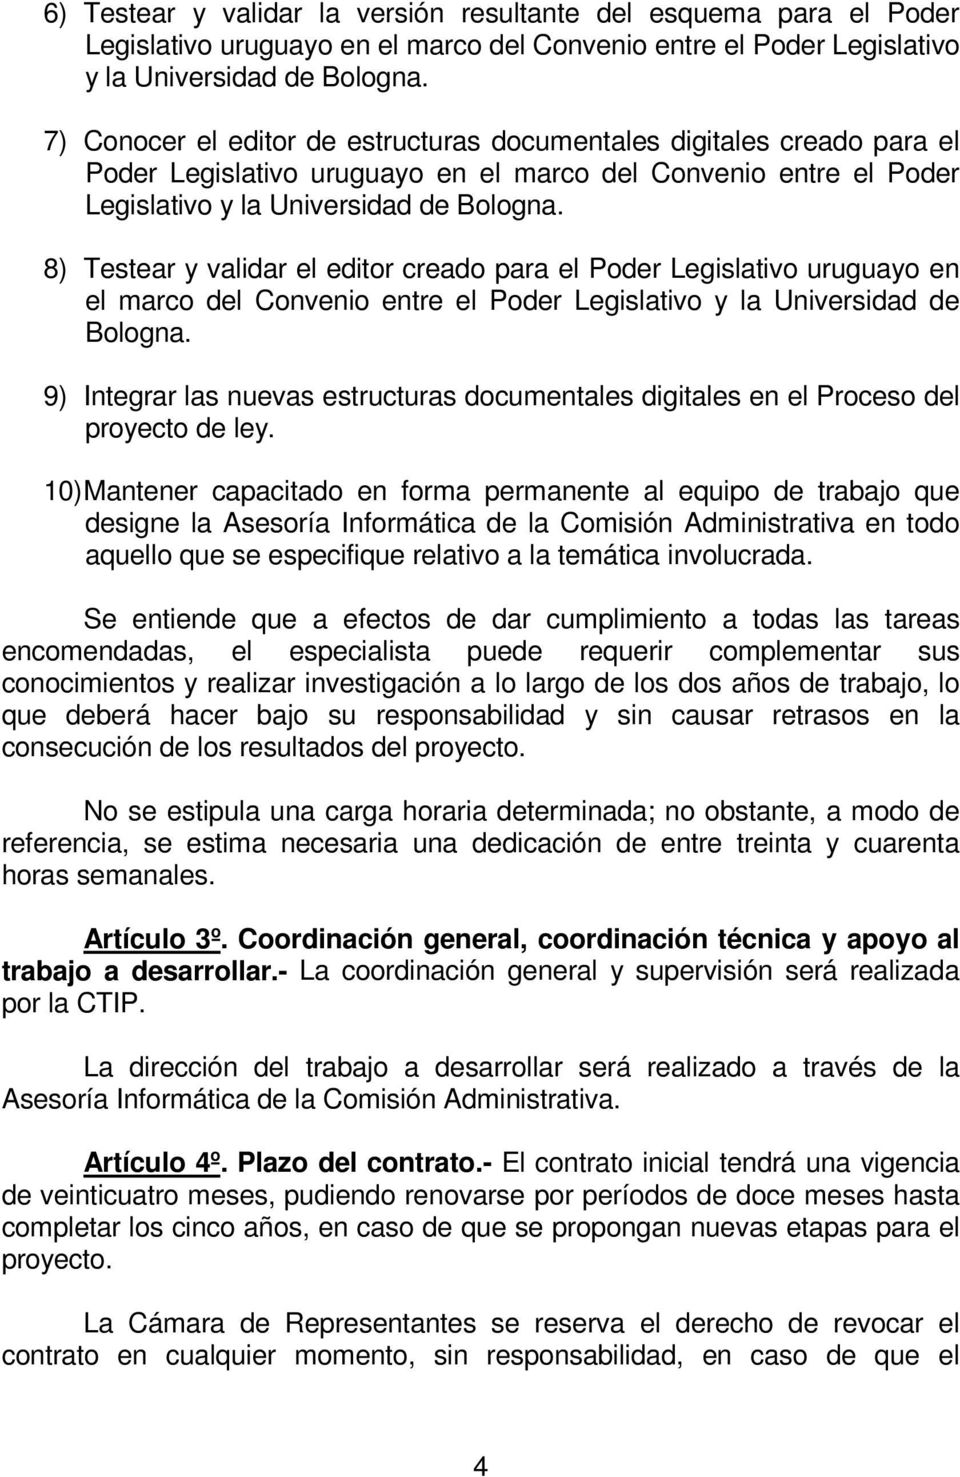 8) Testear y validar el editor creado para el Poder Legislativo uruguayo en el marco del Convenio entre el Poder Legislativo y la Universidad de Bologna.